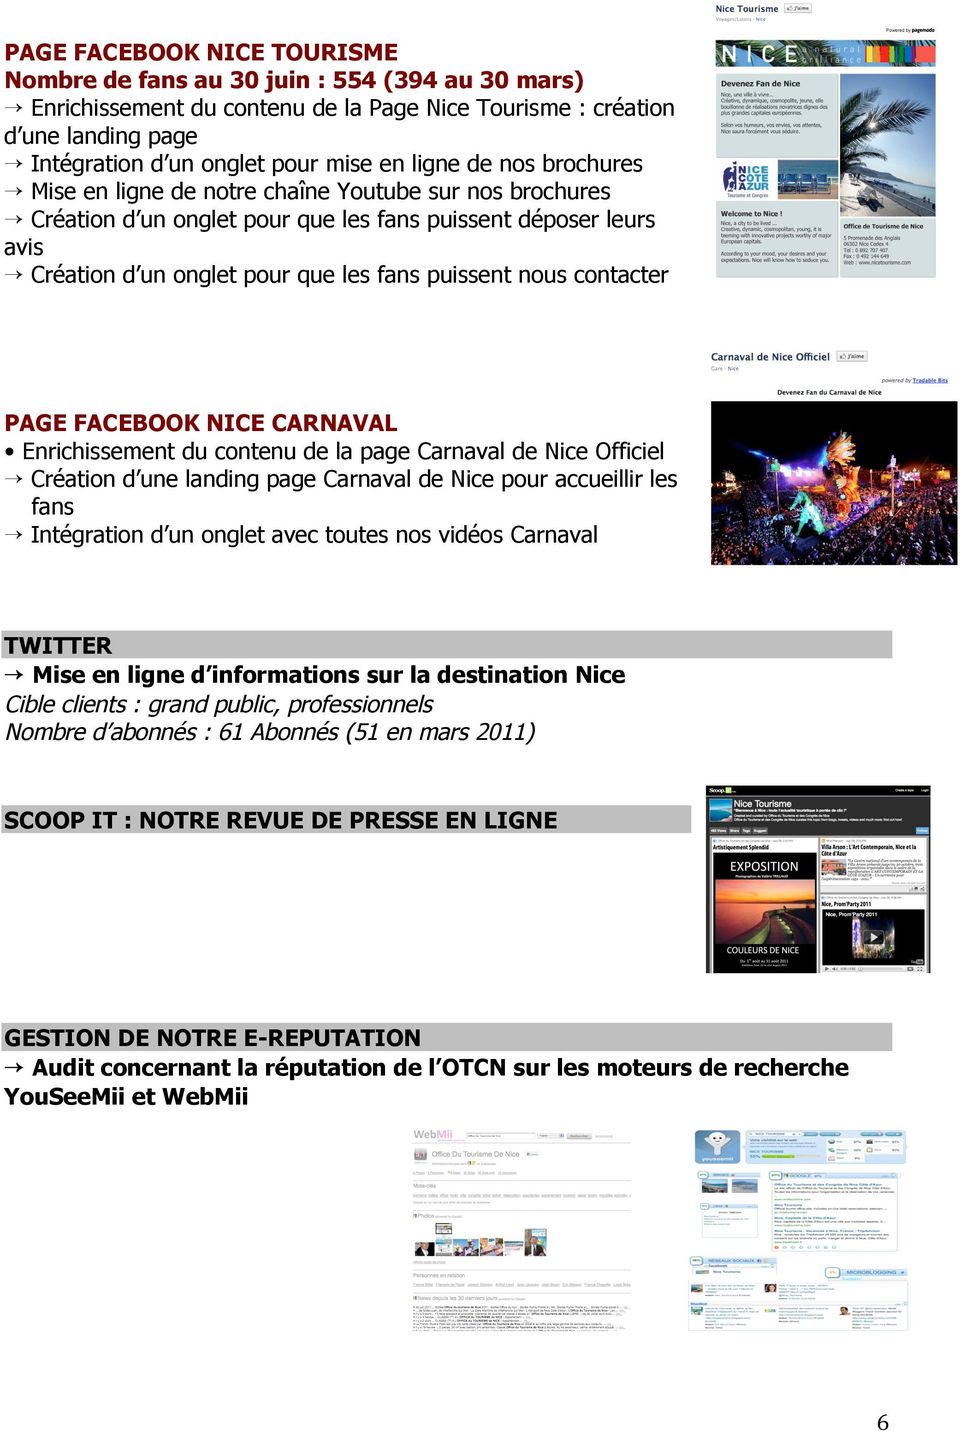 contacter PAGE FACEBOOK NICE CARNAVAL Enrichissement du contenu de la page Carnaval de Nice Officiel Création d une landing page Carnaval de Nice pour accueillir les fans Intégration d un onglet avec